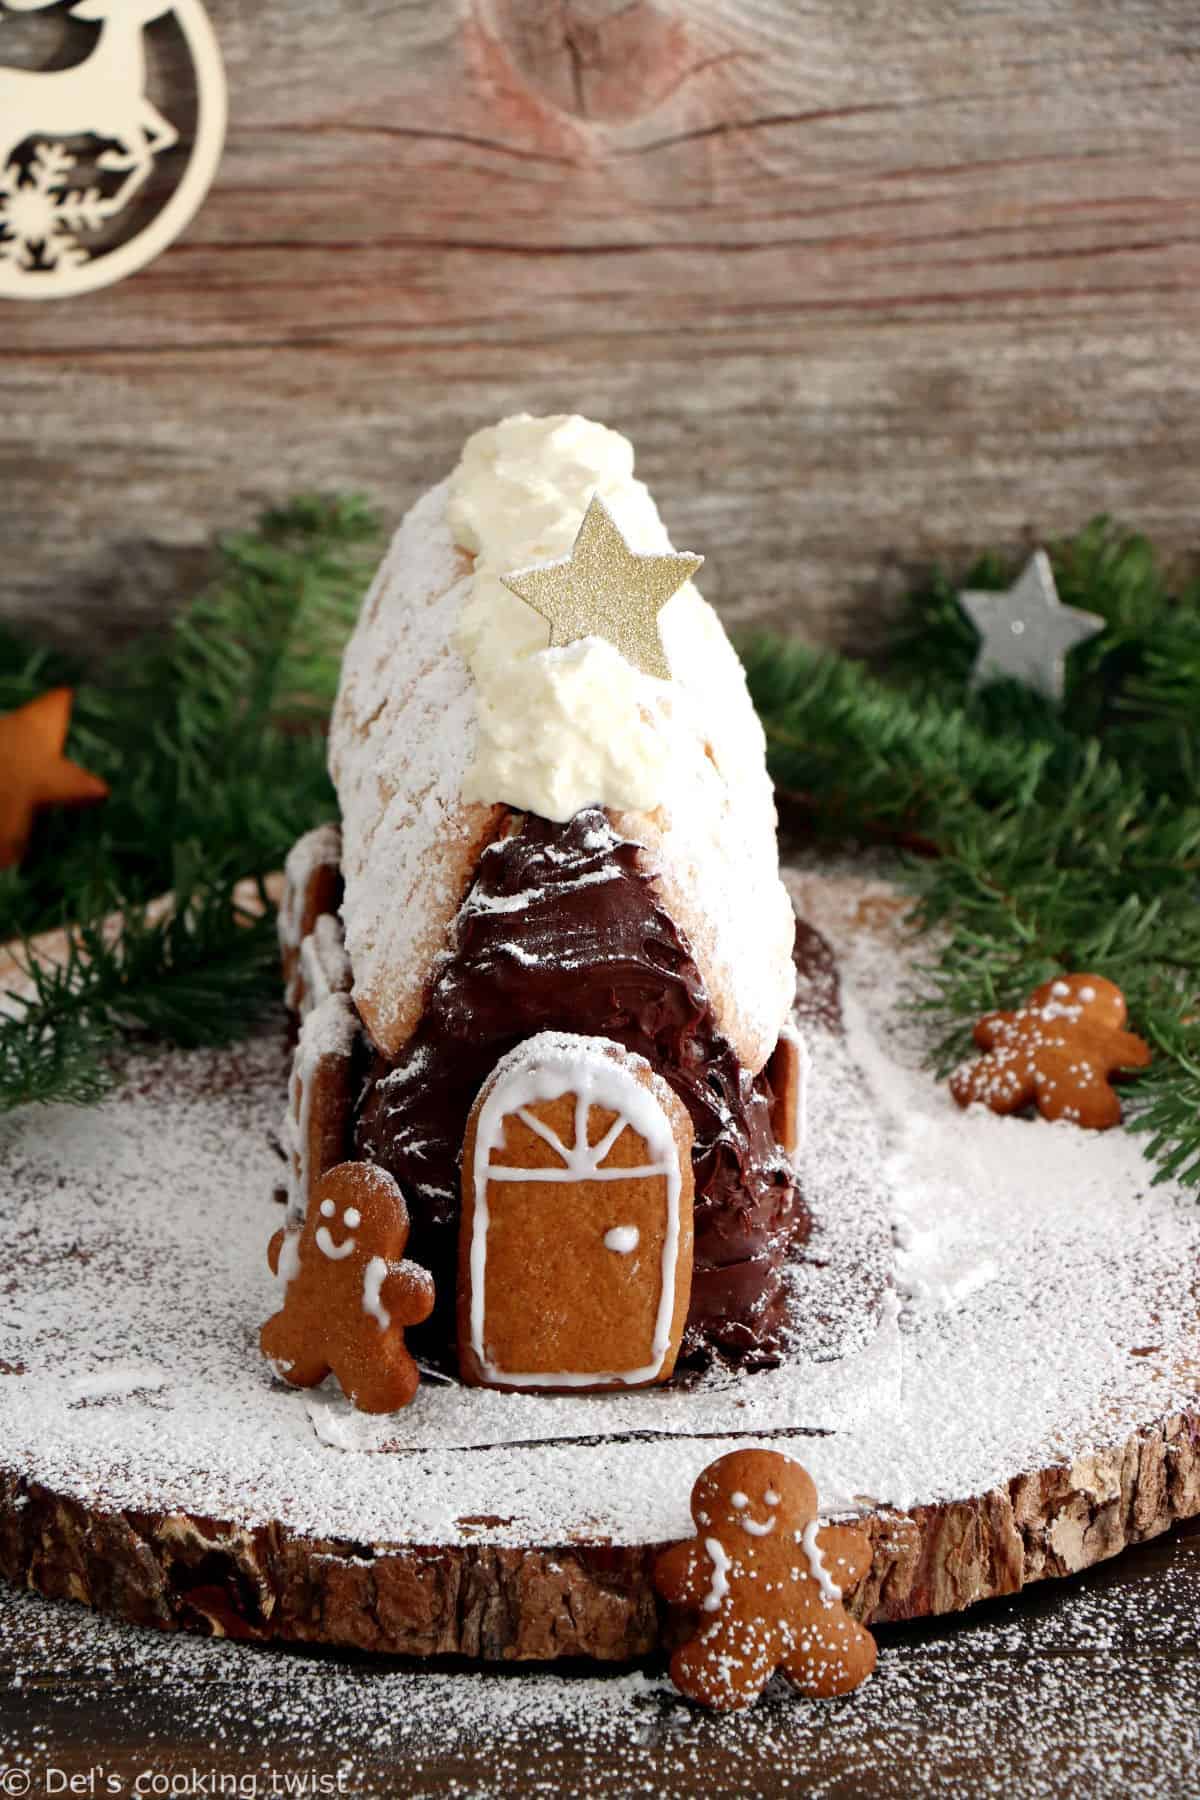 La bûche maison façon tiramisu est u délicieux dessert de Noël réalisé avec une base de tiramisu sous forme de chalet décoré de gingerbreads.